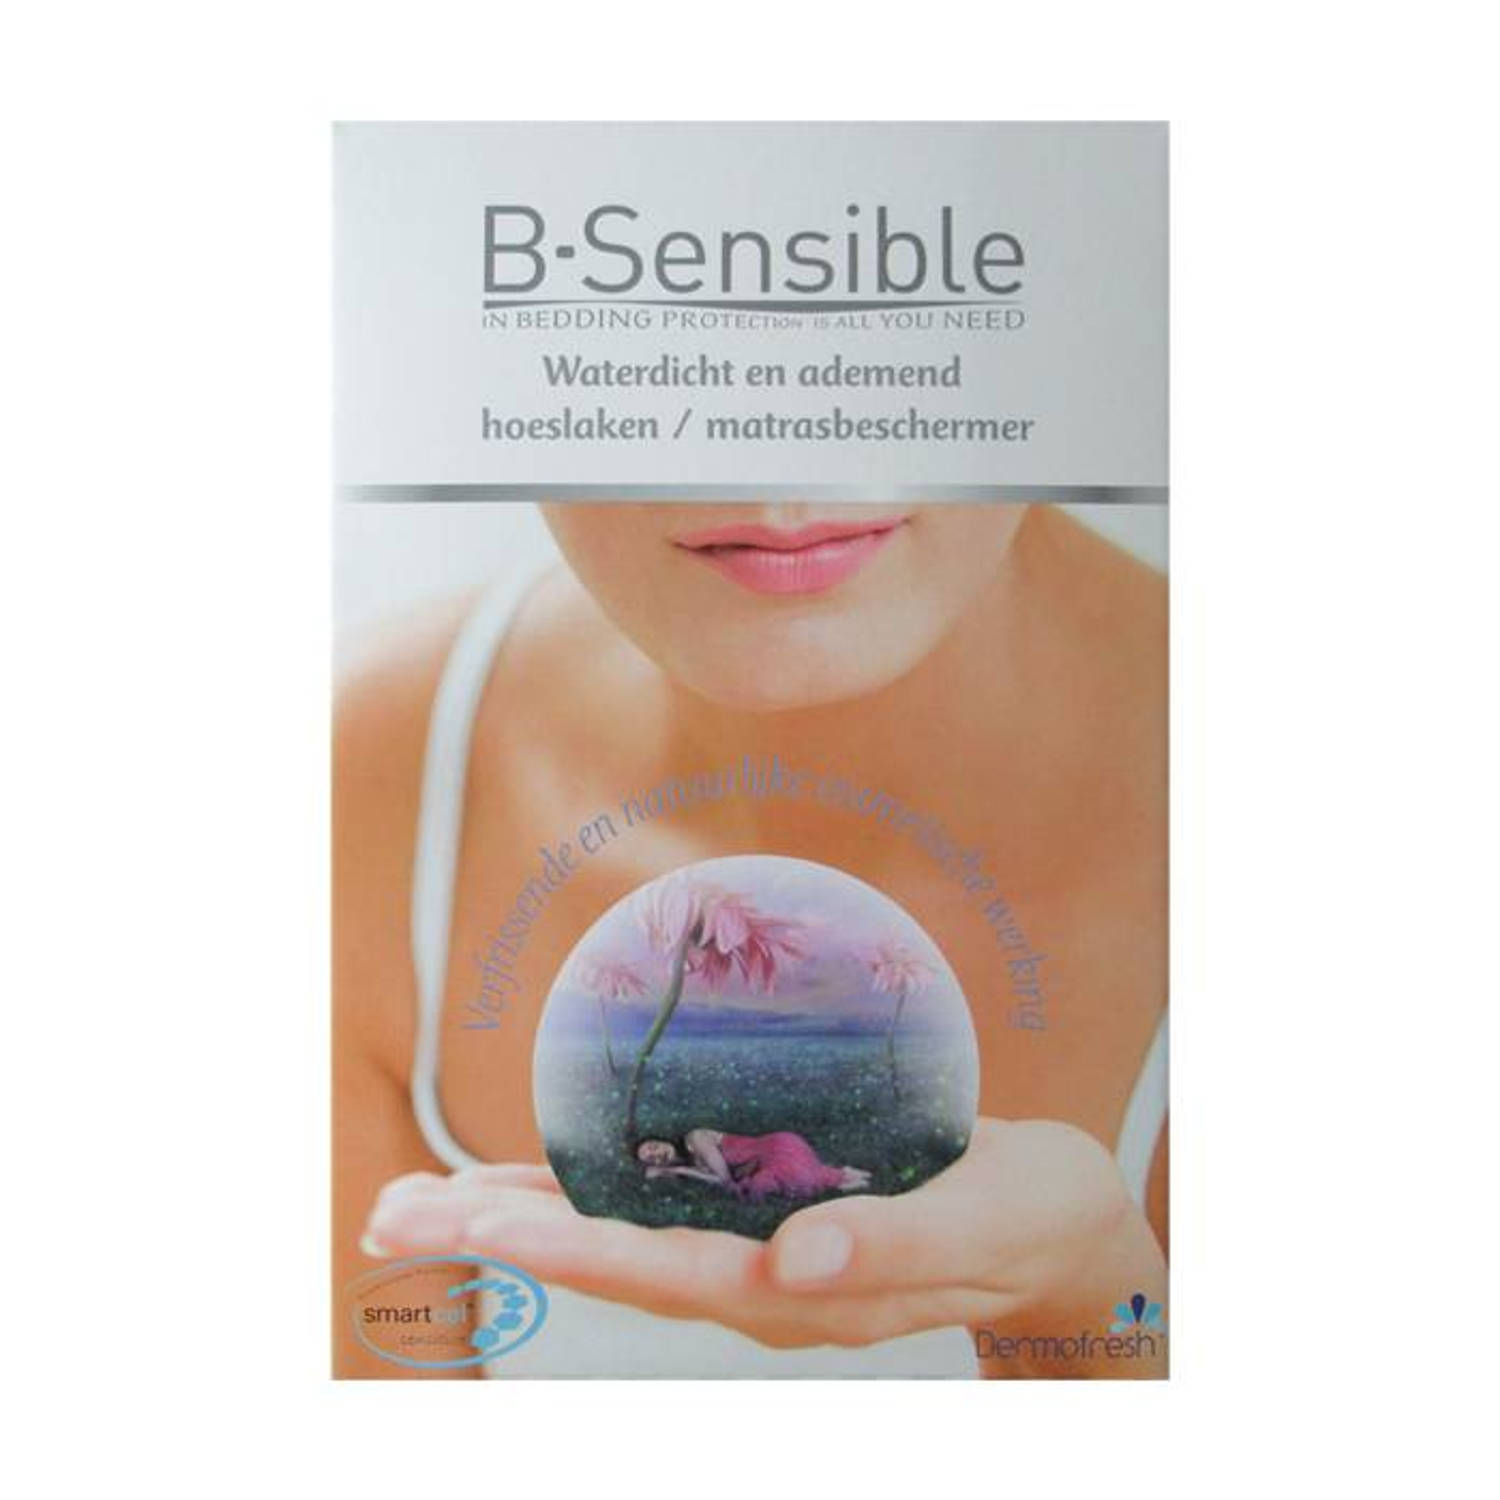 B-Sensible 2 in 1 waterdicht & ademend hoeslaken + matrasbeschermer - Wit - 90x220